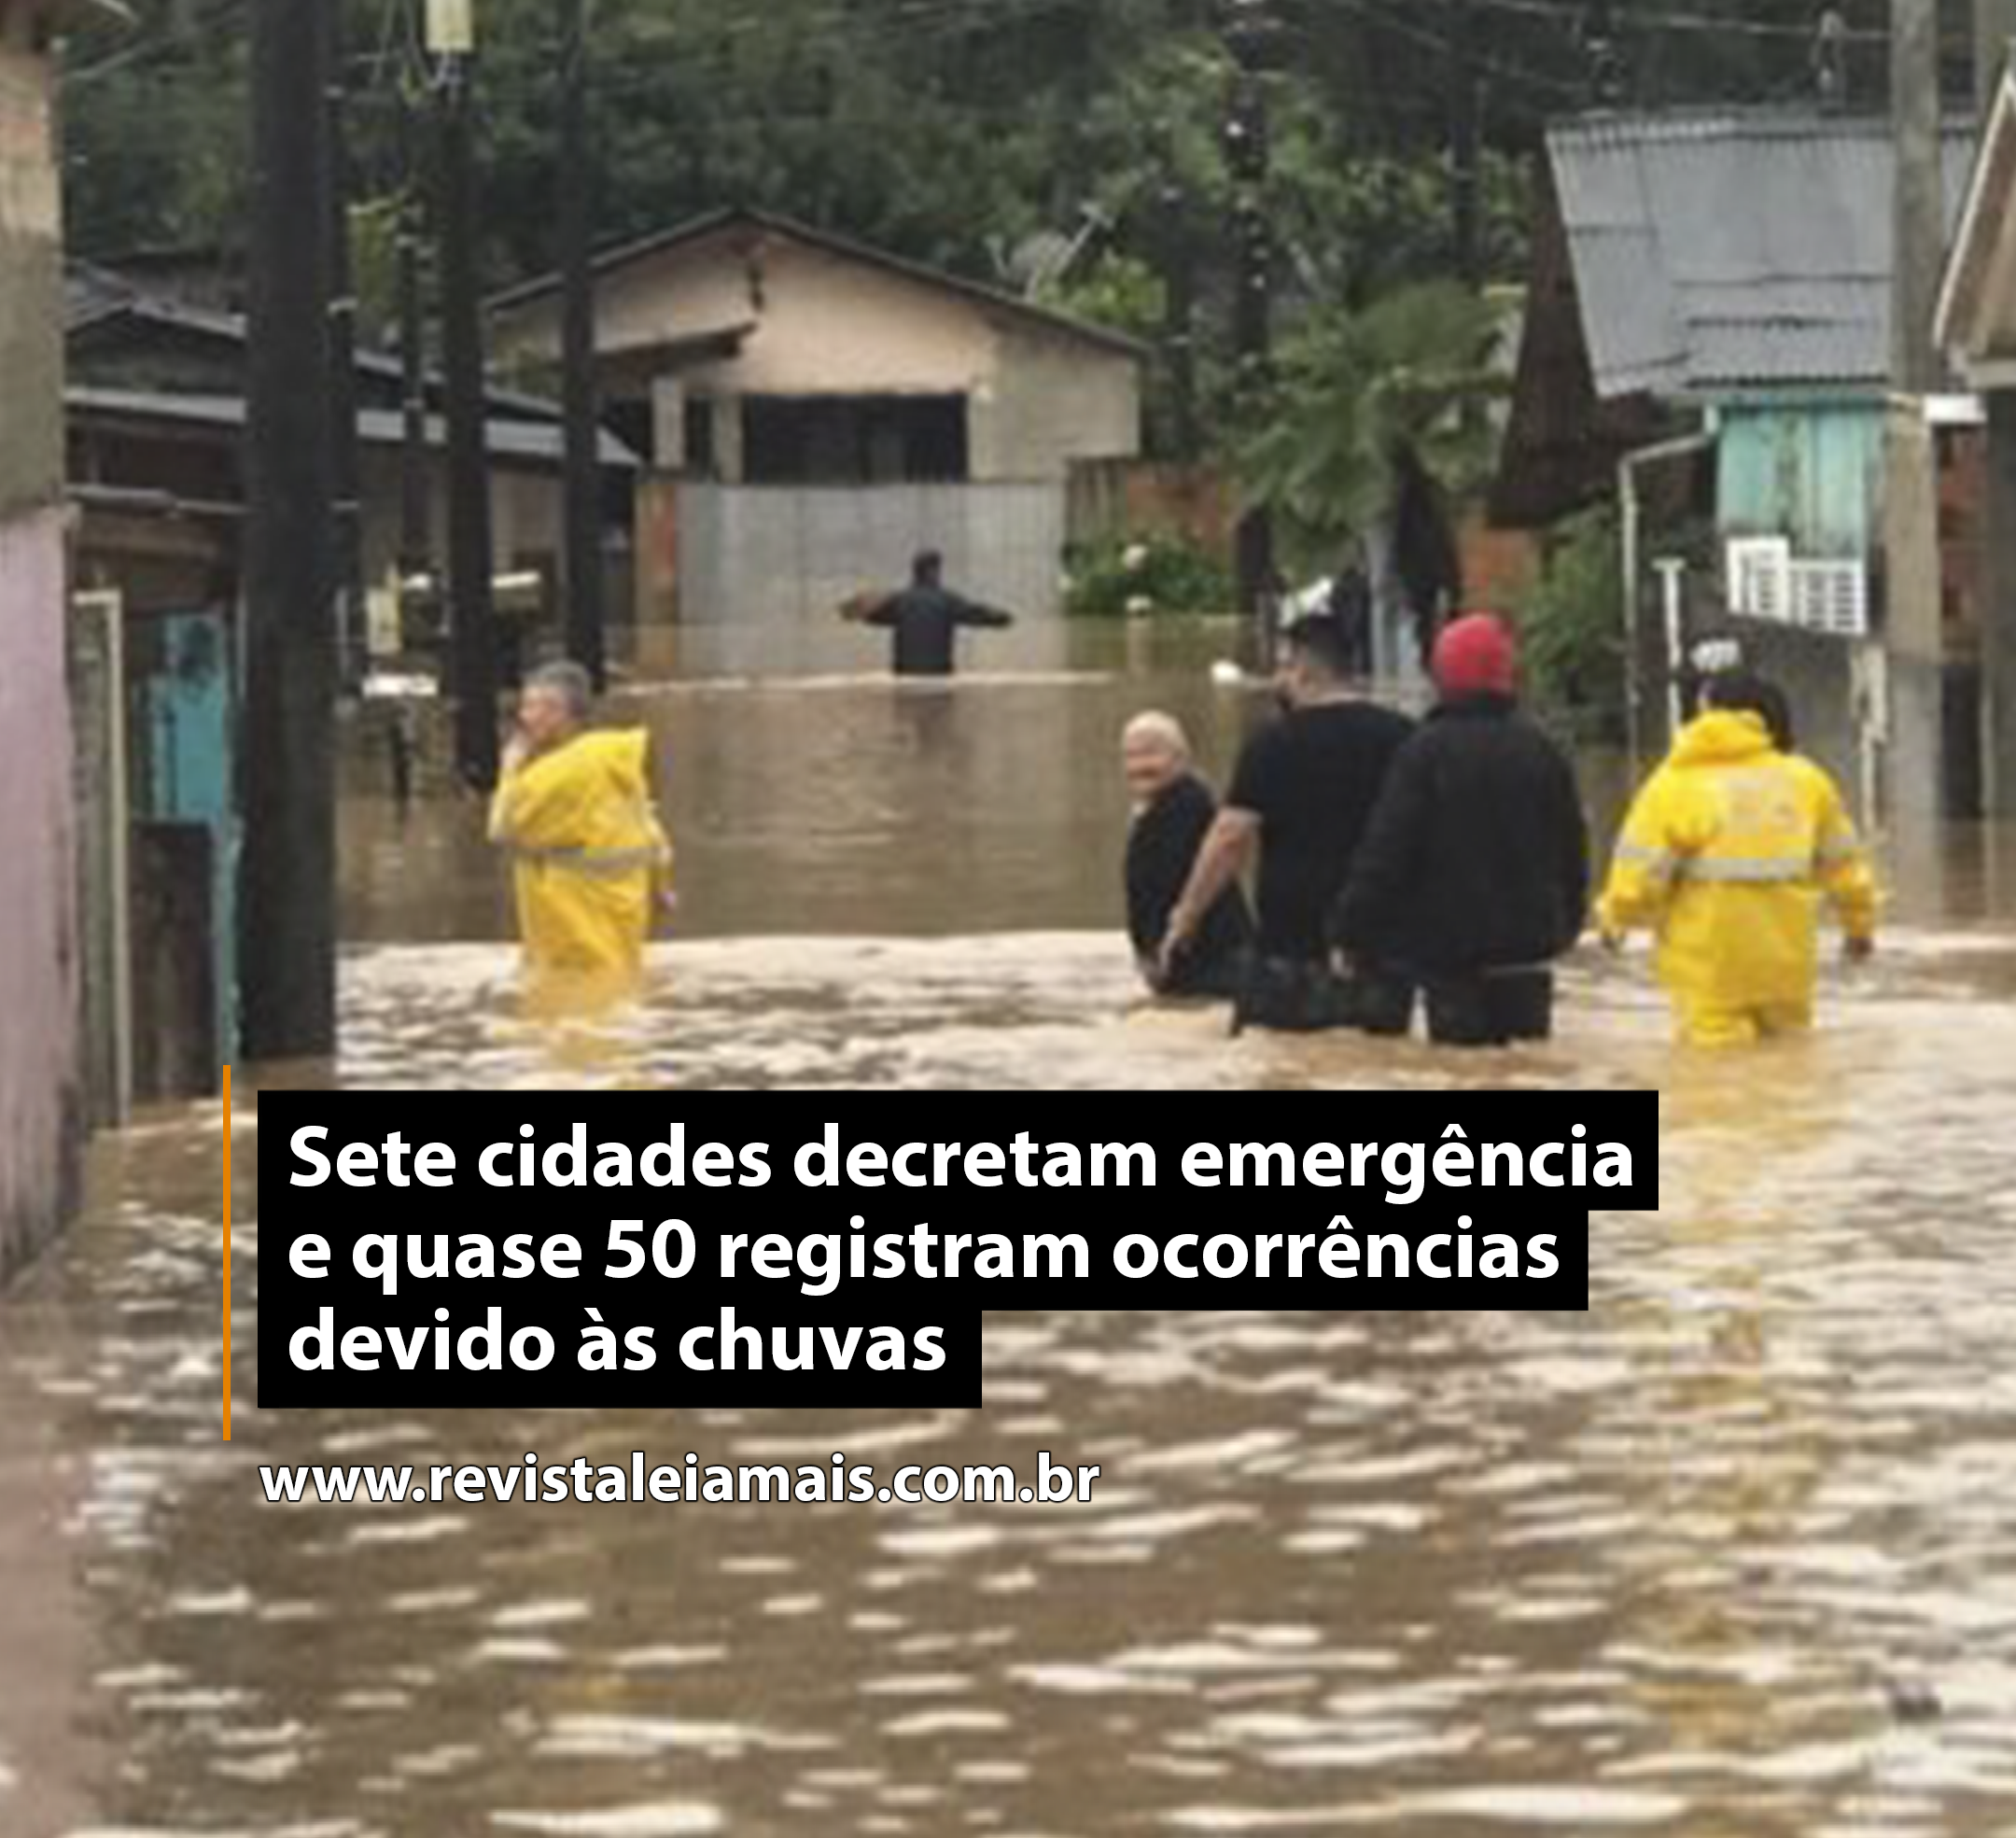 Sete cidades decretam emergência e quase 50 registram ocorrências devido às chuvas